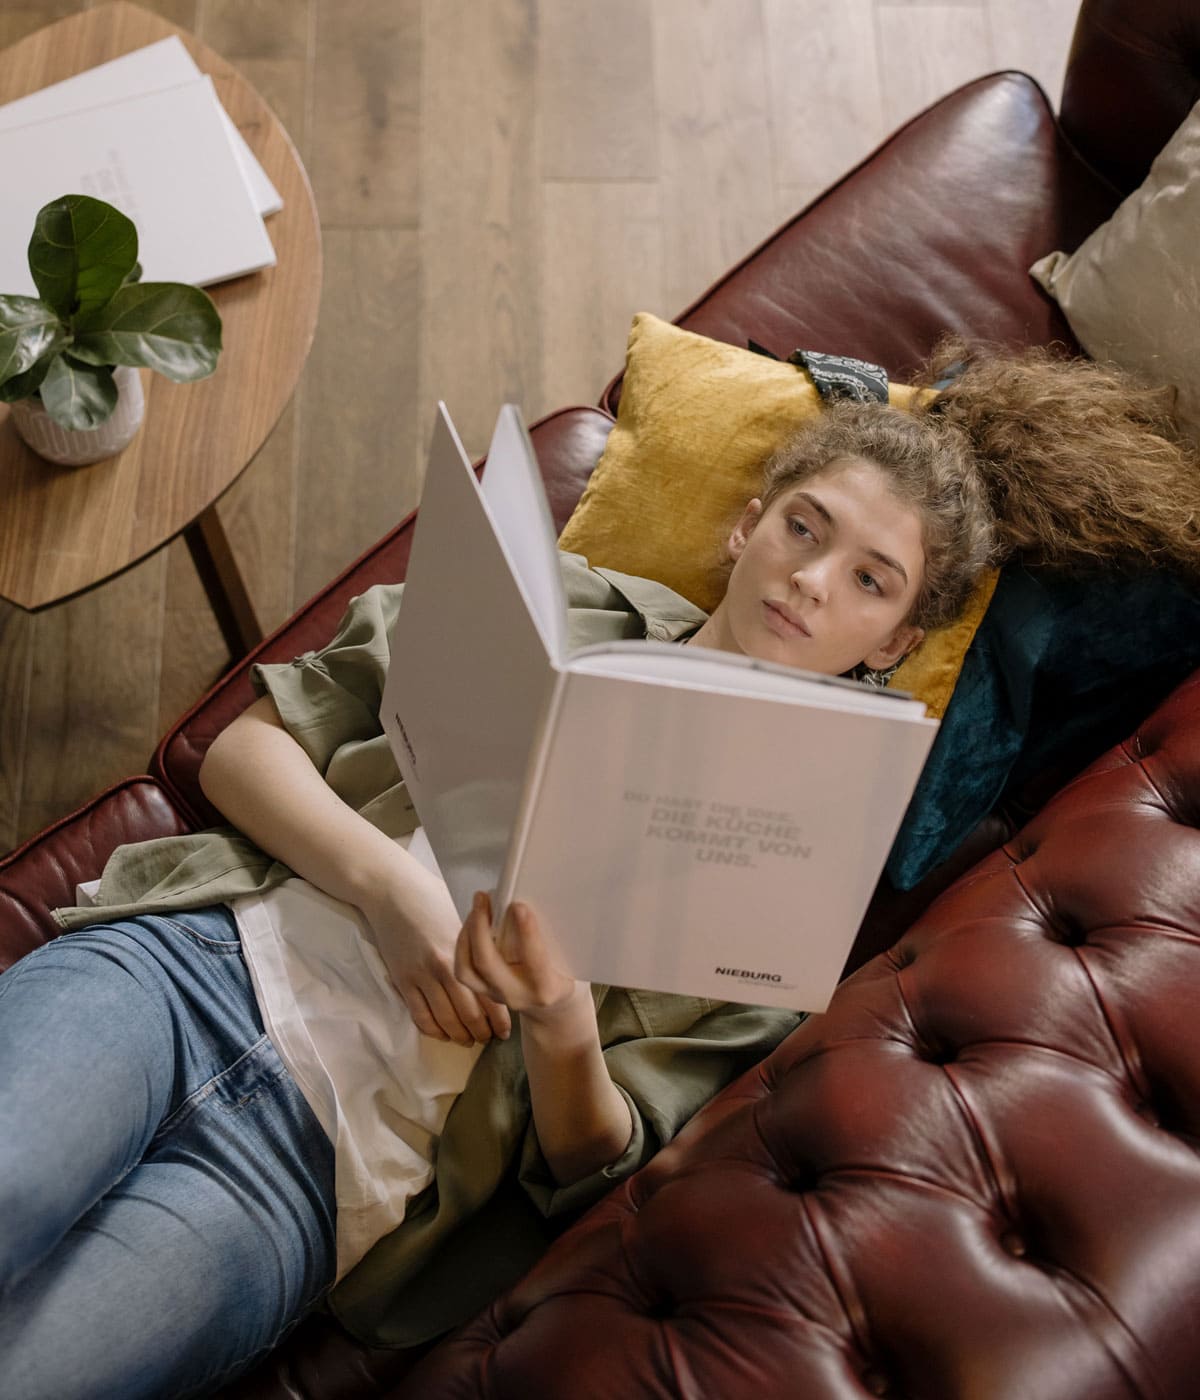 Una chica descansa tumbada en un sofá con la cabeza sobre unos cojines de colores mientras lee un libro